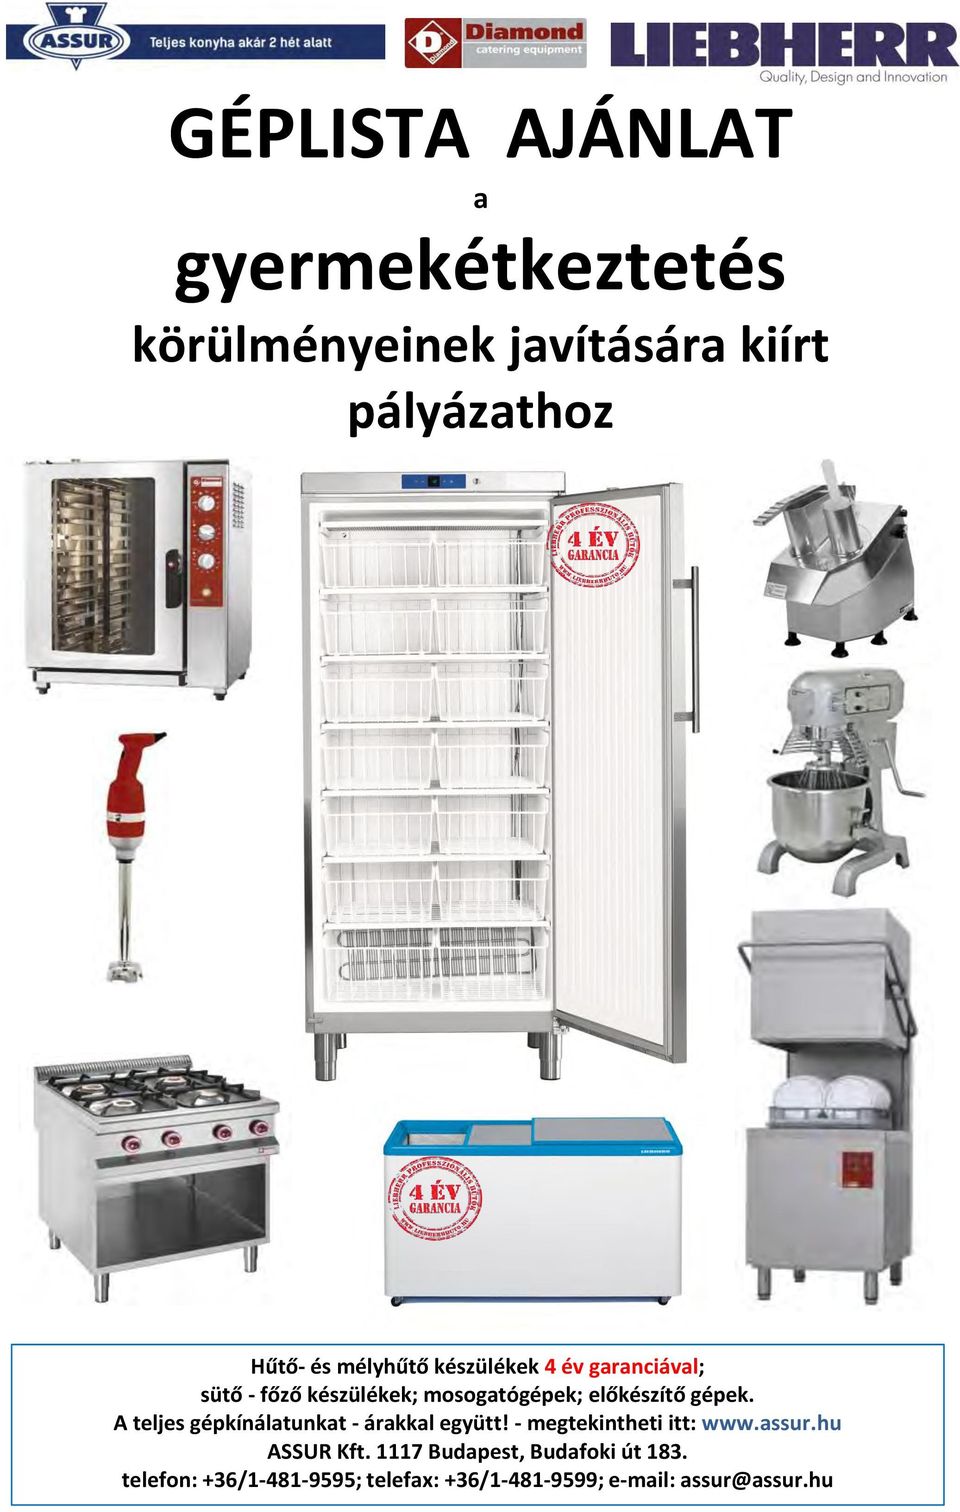 A teljes gépkínálatunkat - árakkal együtt! - megtekintheti itt: www.assur.hu ASSUR Kft.